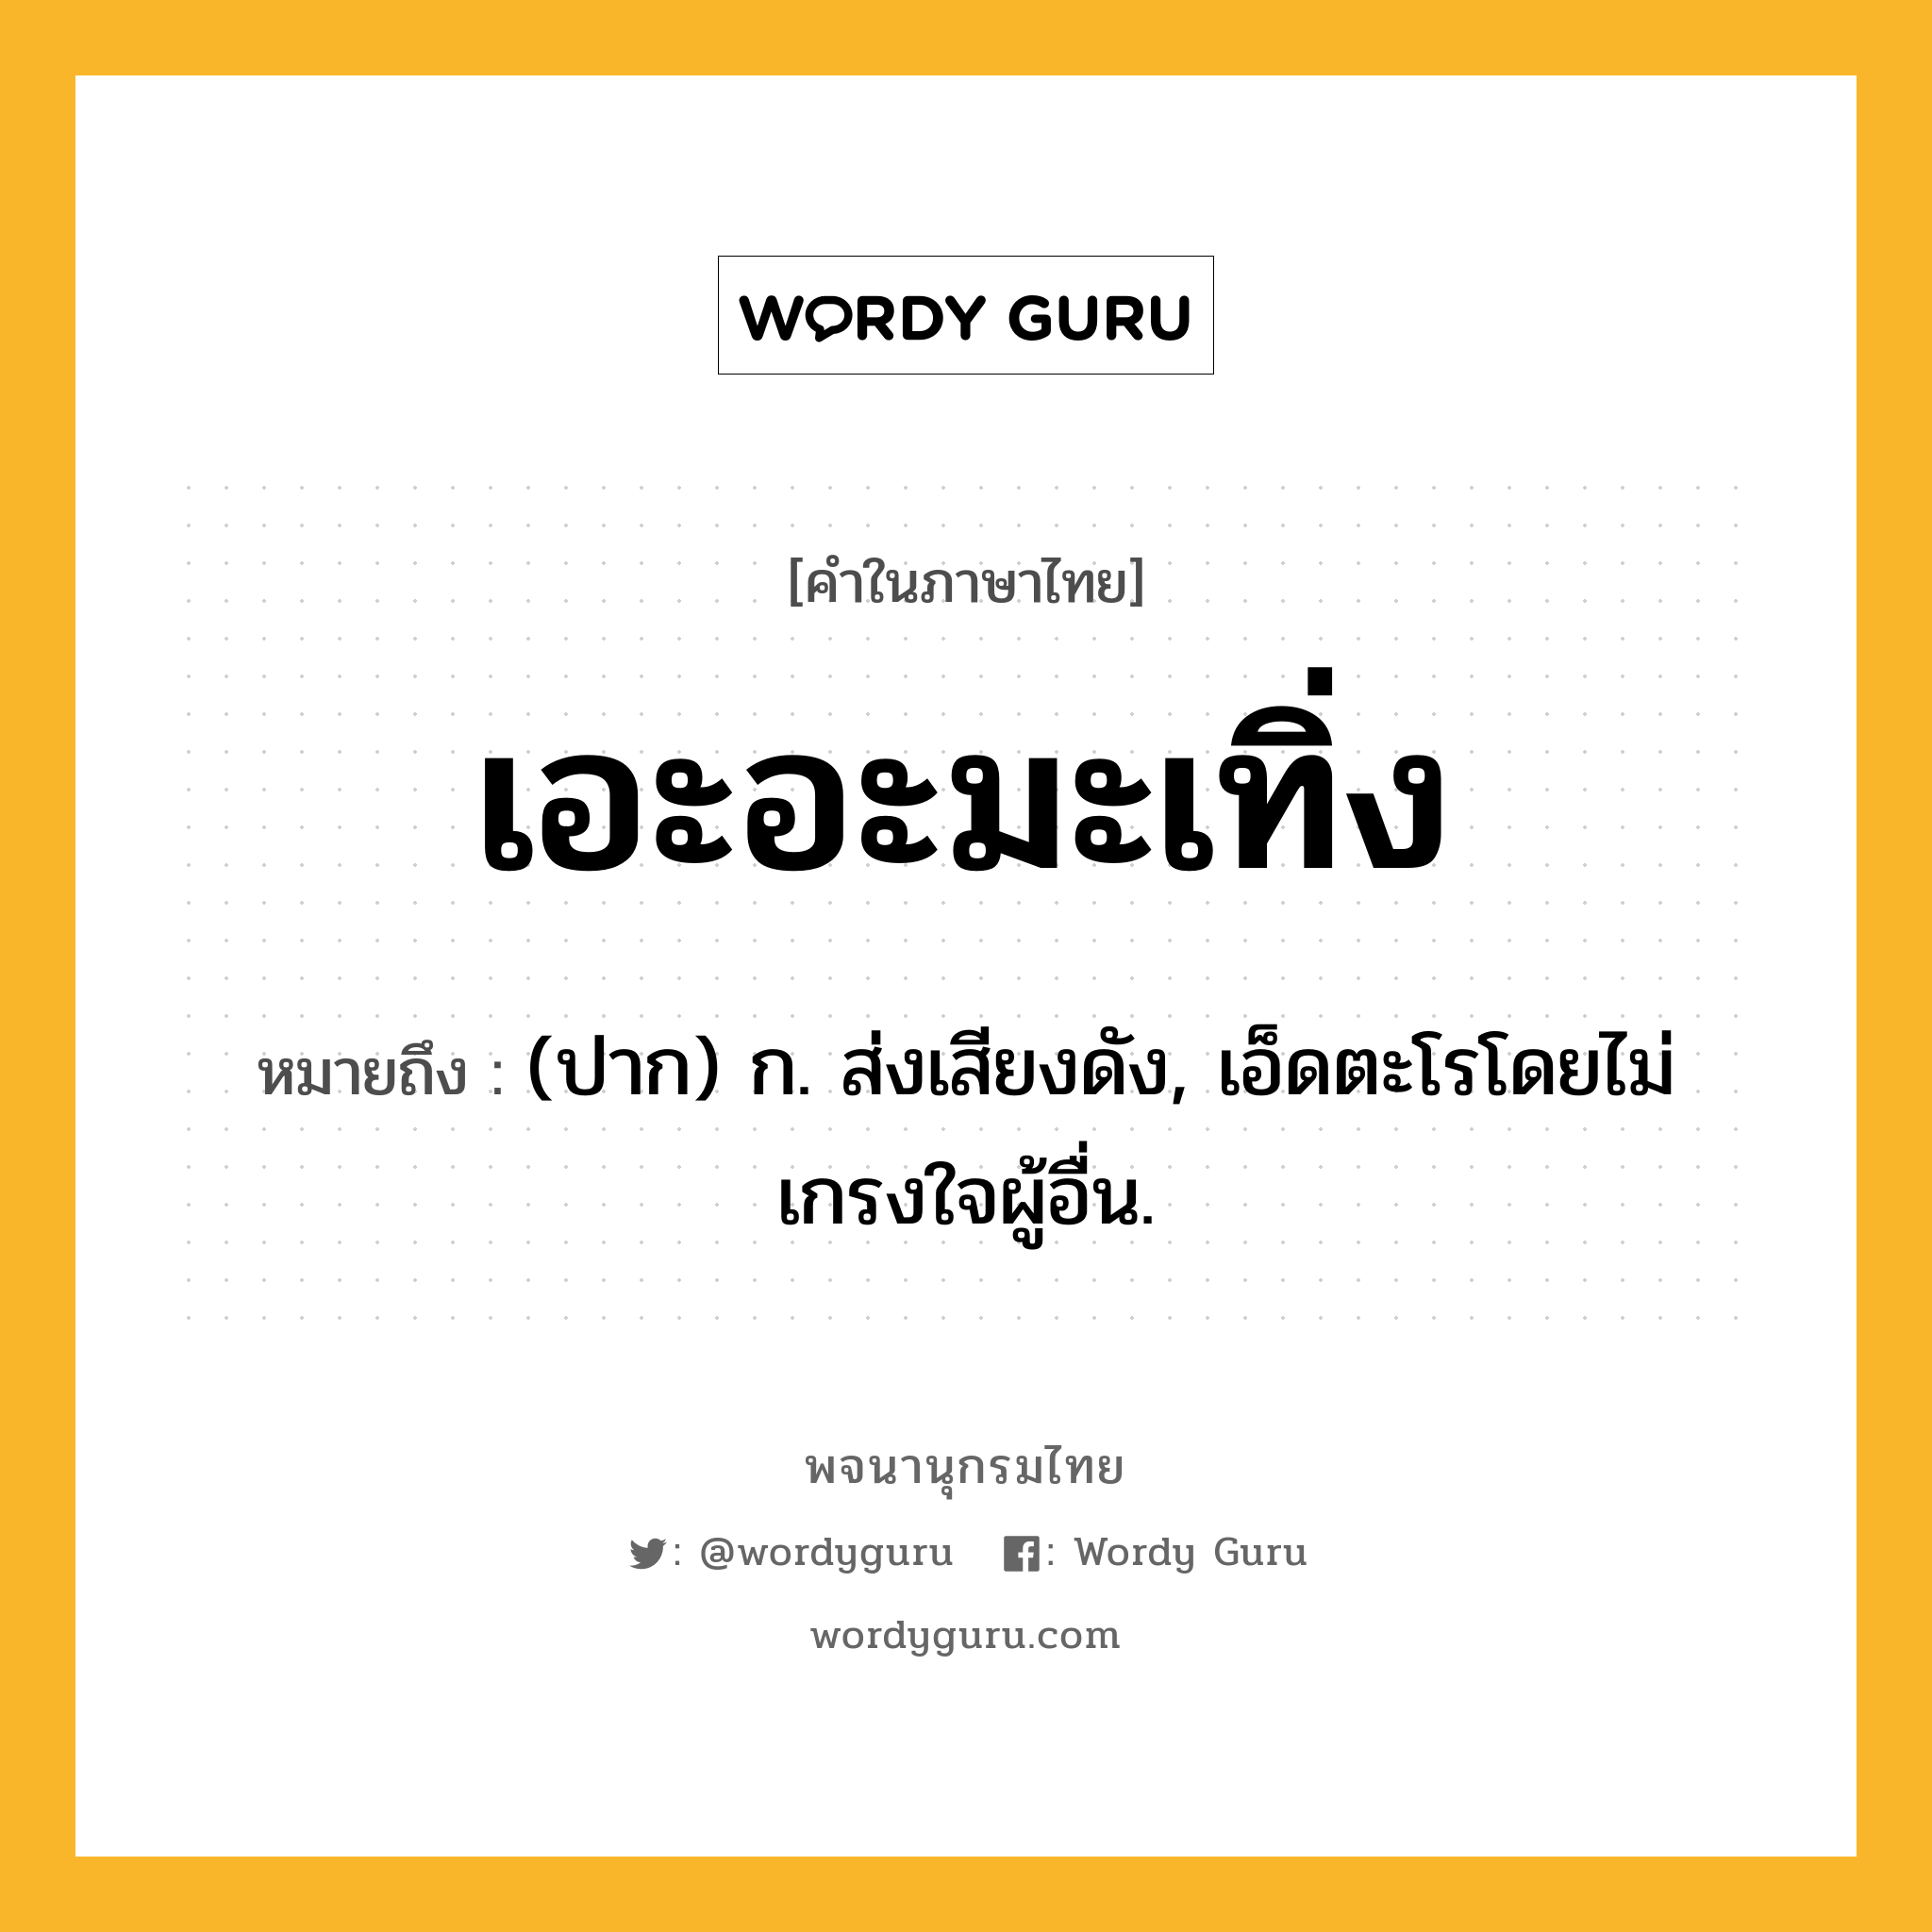 เอะอะมะเทิ่ง หมายถึงอะไร?, คำในภาษาไทย เอะอะมะเทิ่ง หมายถึง (ปาก) ก. ส่งเสียงดัง, เอ็ดตะโรโดยไม่เกรงใจผู้อื่น.